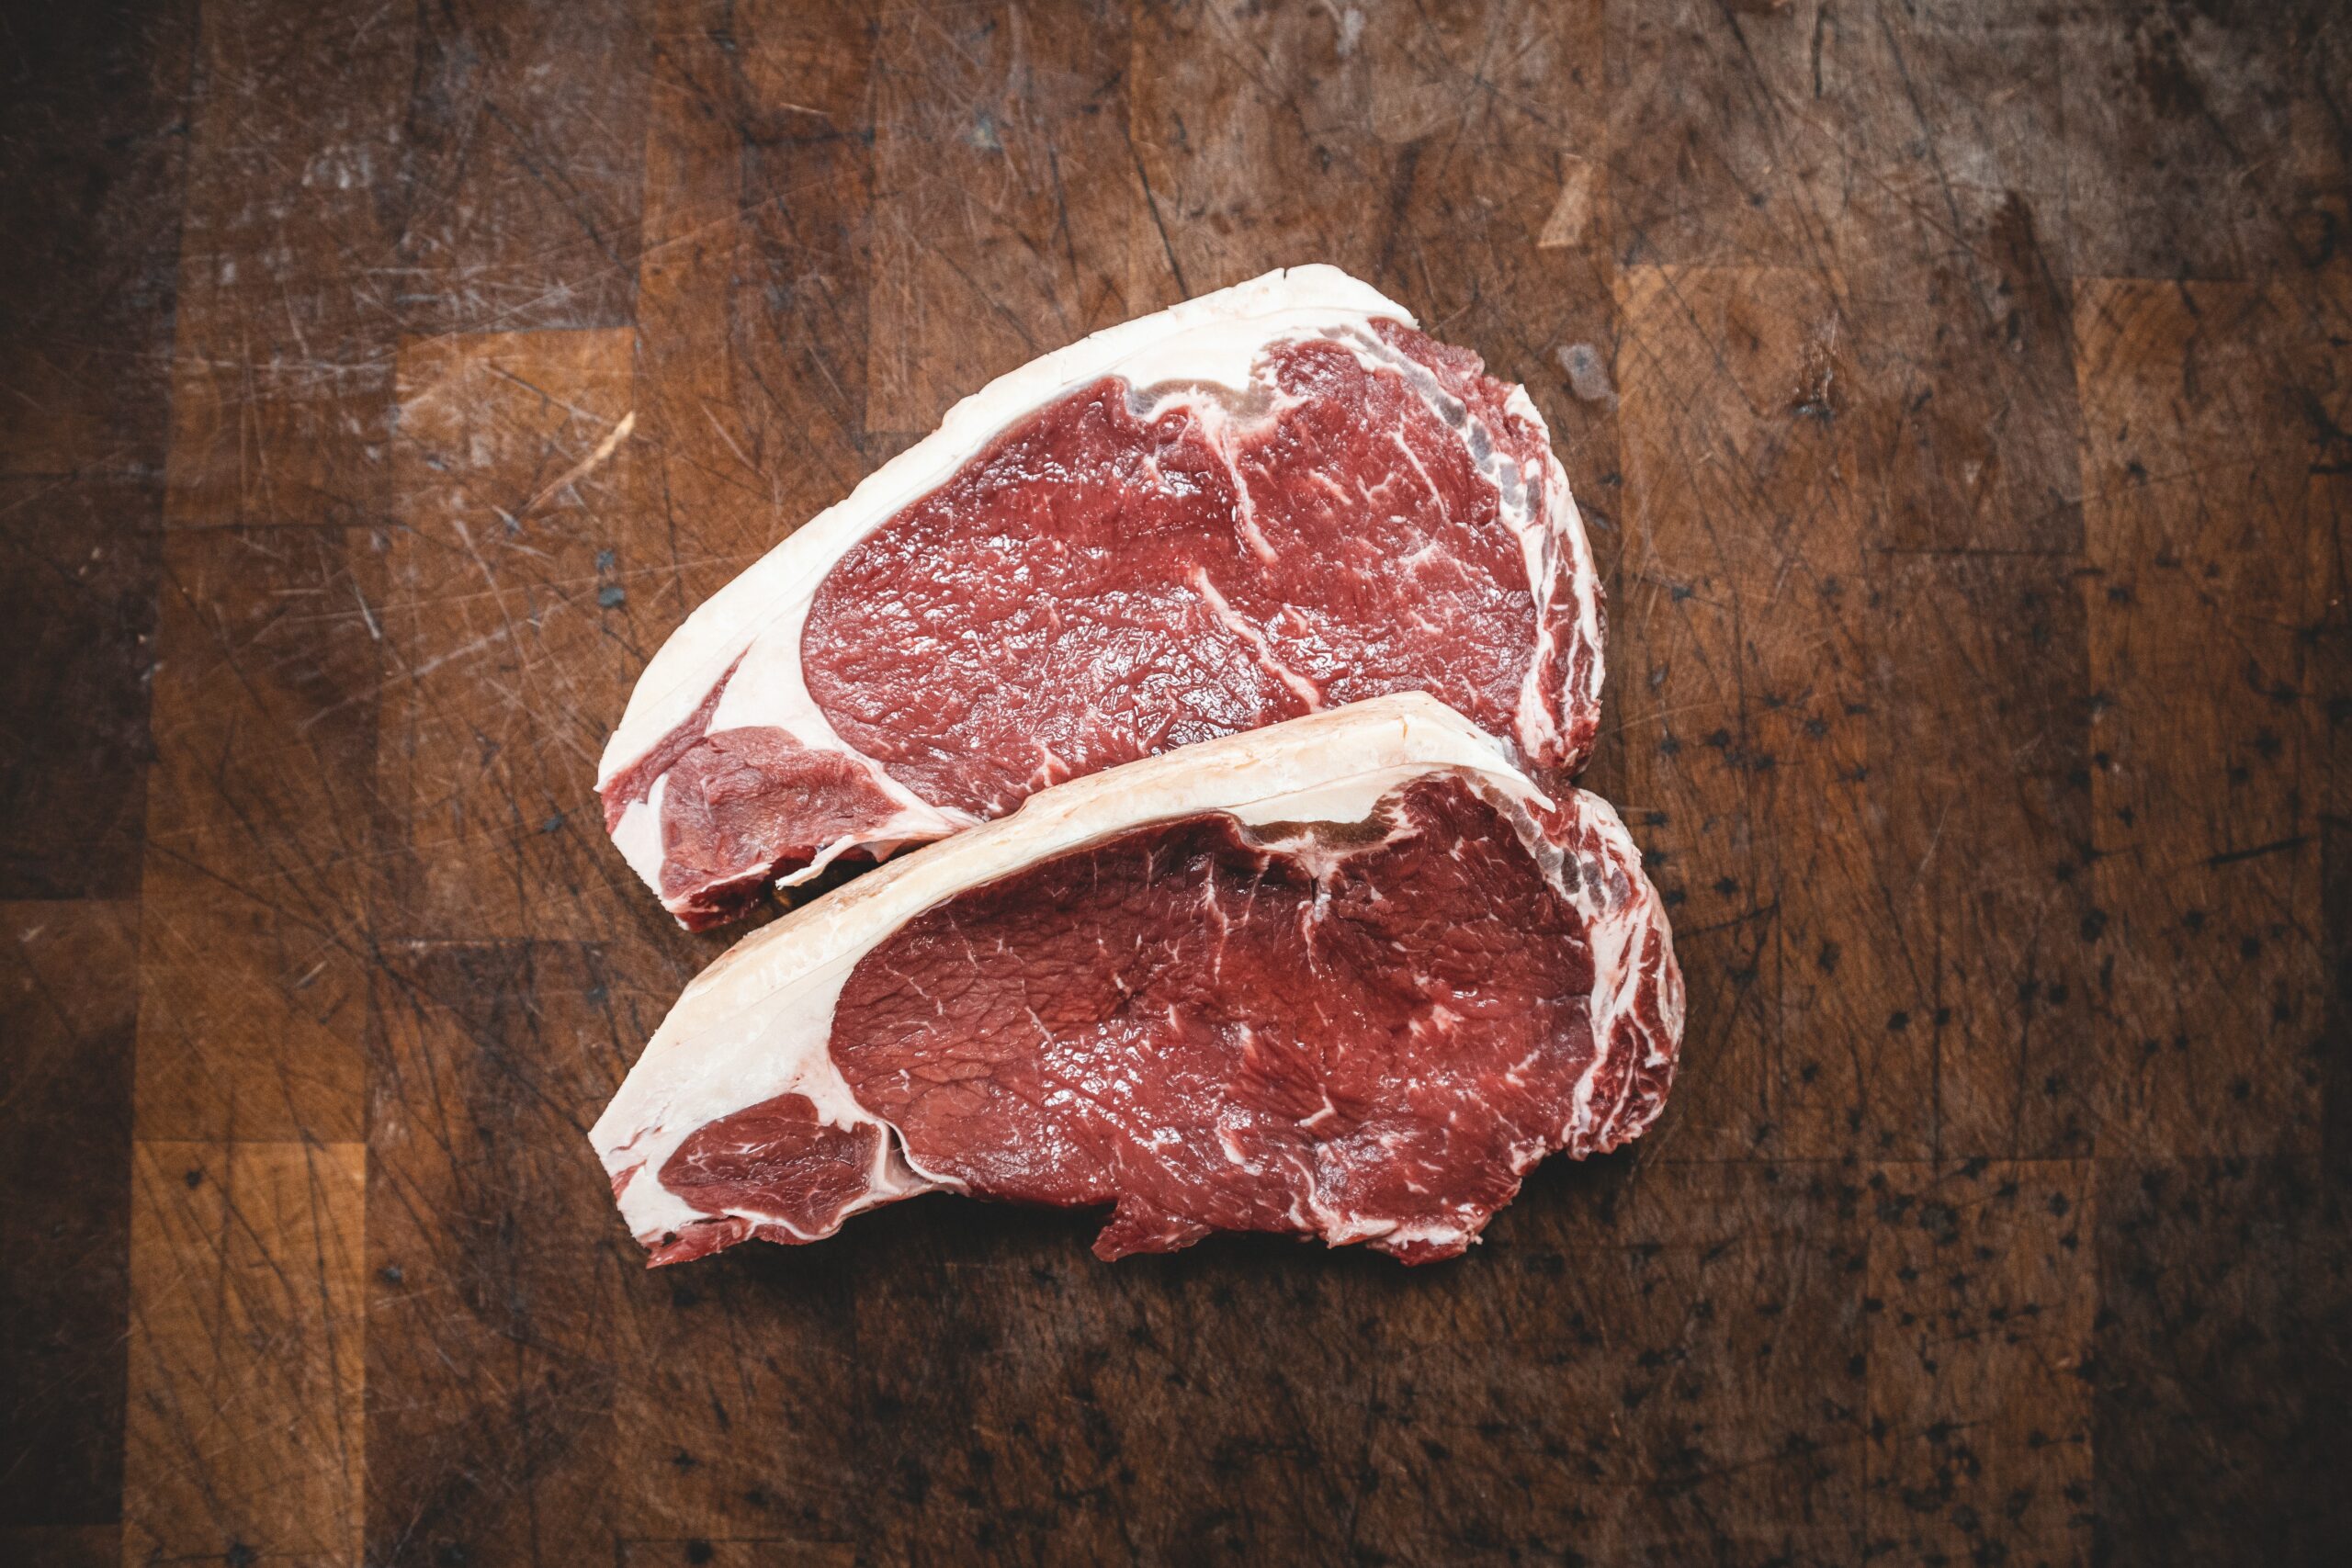 Carne representa 86% da pegada de carbono na dieta dos brasileiros